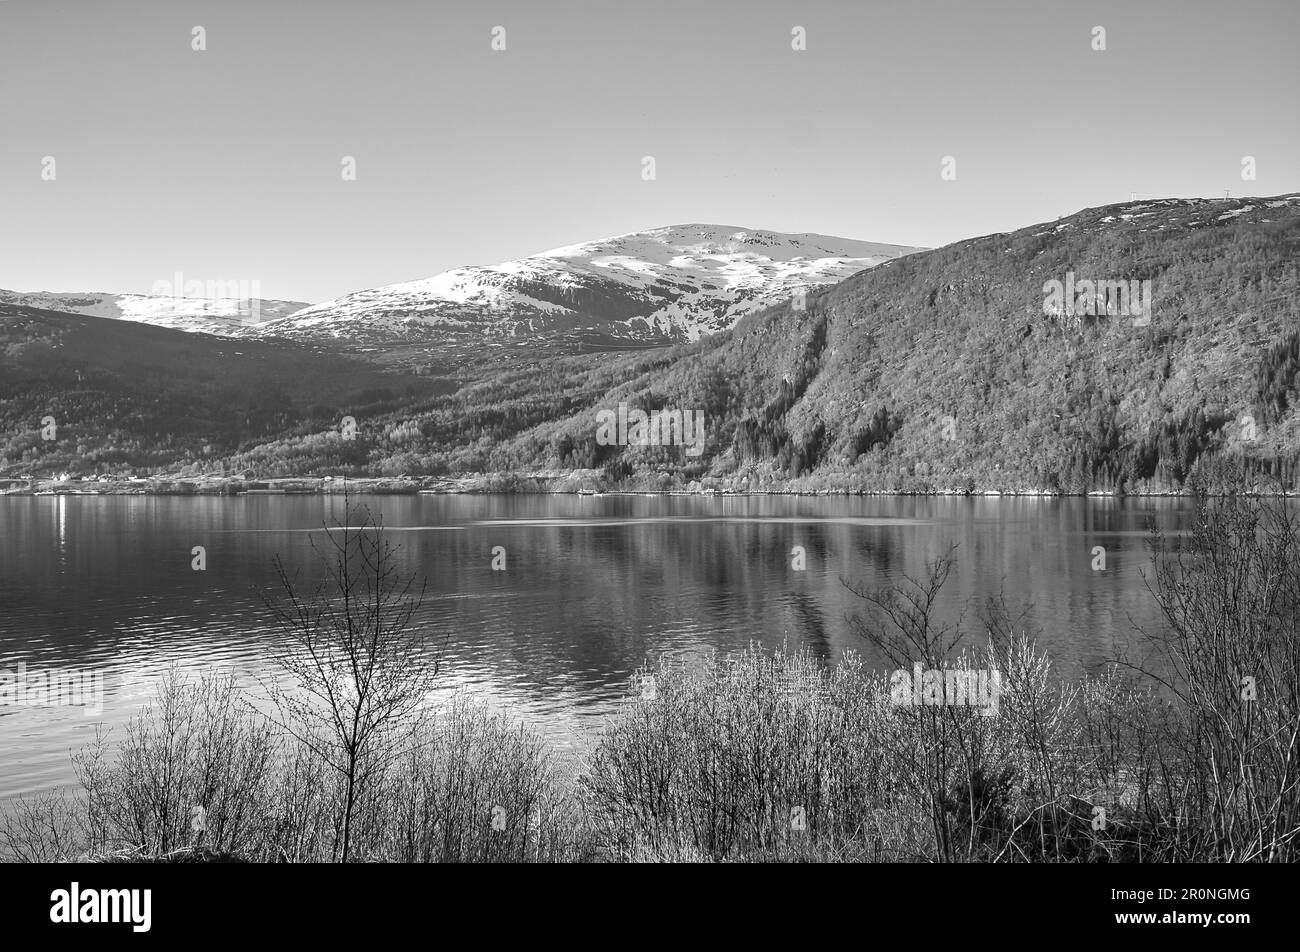 Nordfjord en Norvège en noir et blanc. Vue sur les montagnes couvertes de neige. Nature sauvage en Scandinavie, au soleil. Photo de paysage du nord Banque D'Images